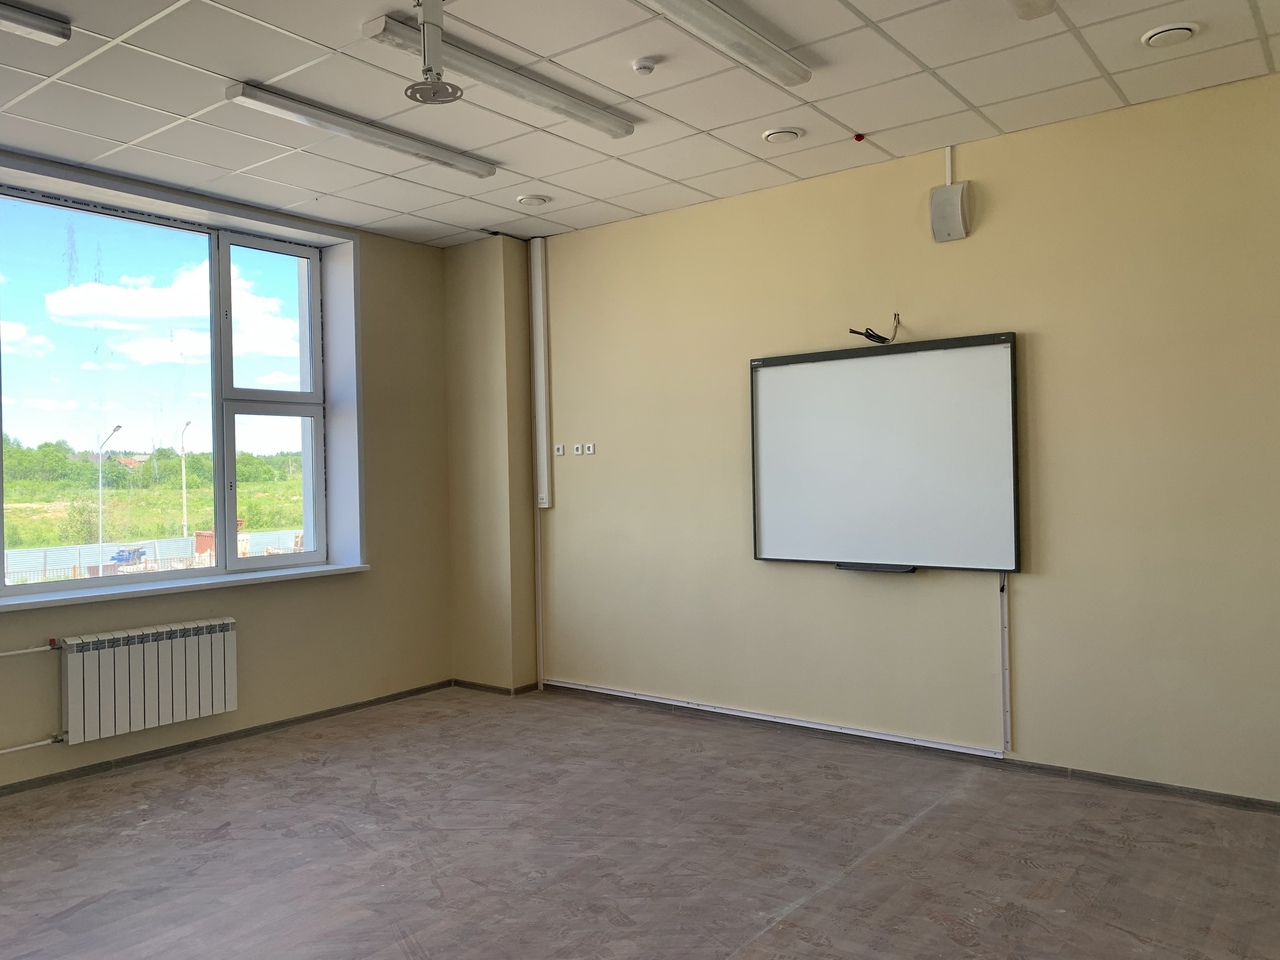 О ходе строительства новой школы в ЖК Любимов